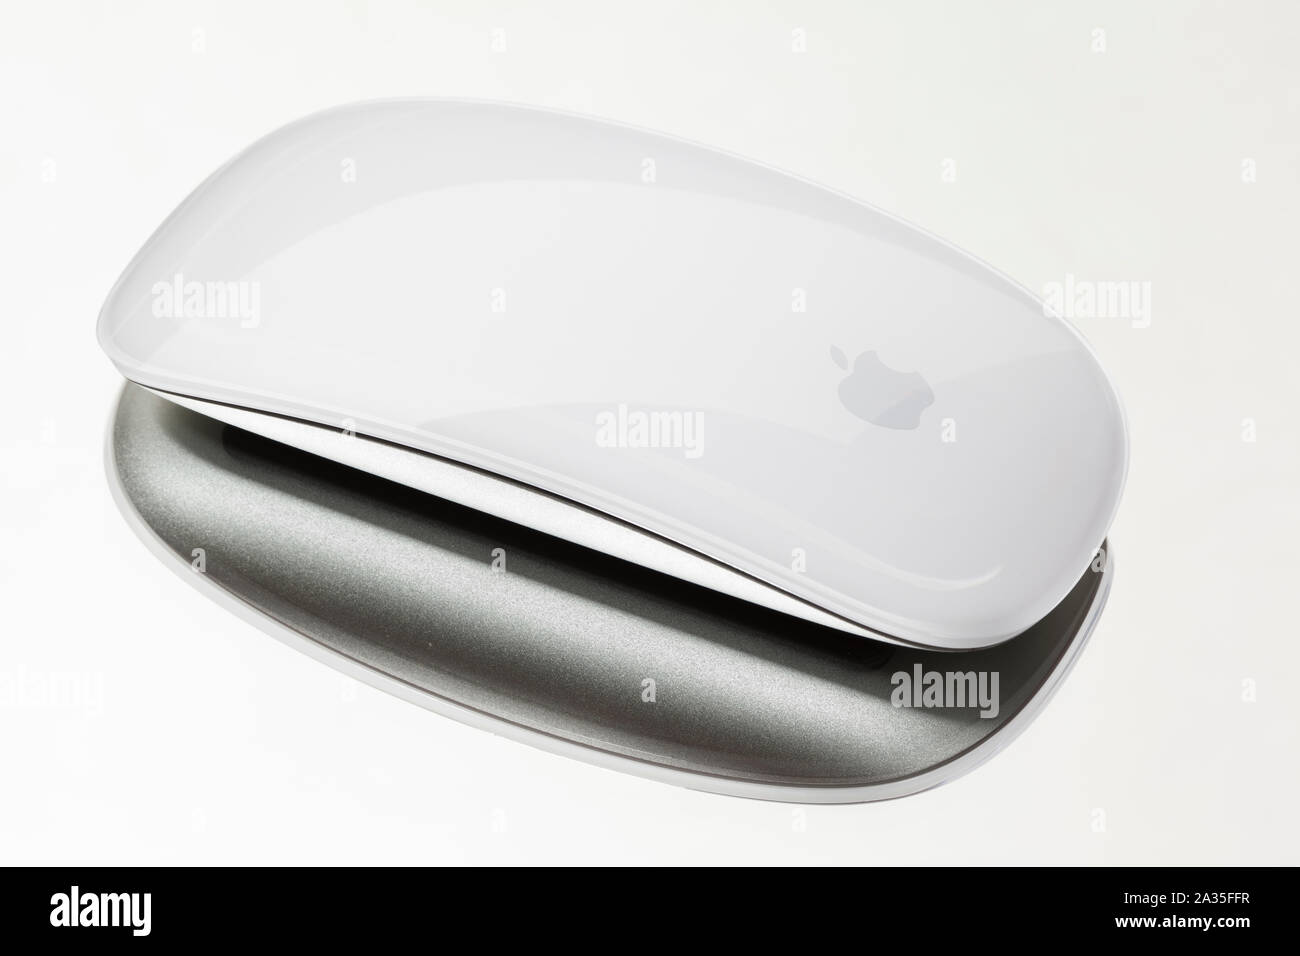 Badewanne, UK - 26. MÄRZ 2011: Studio geschossen von einem weißen Apple Magic Mouse auf einem gespiegelten Hintergrund Stockfoto